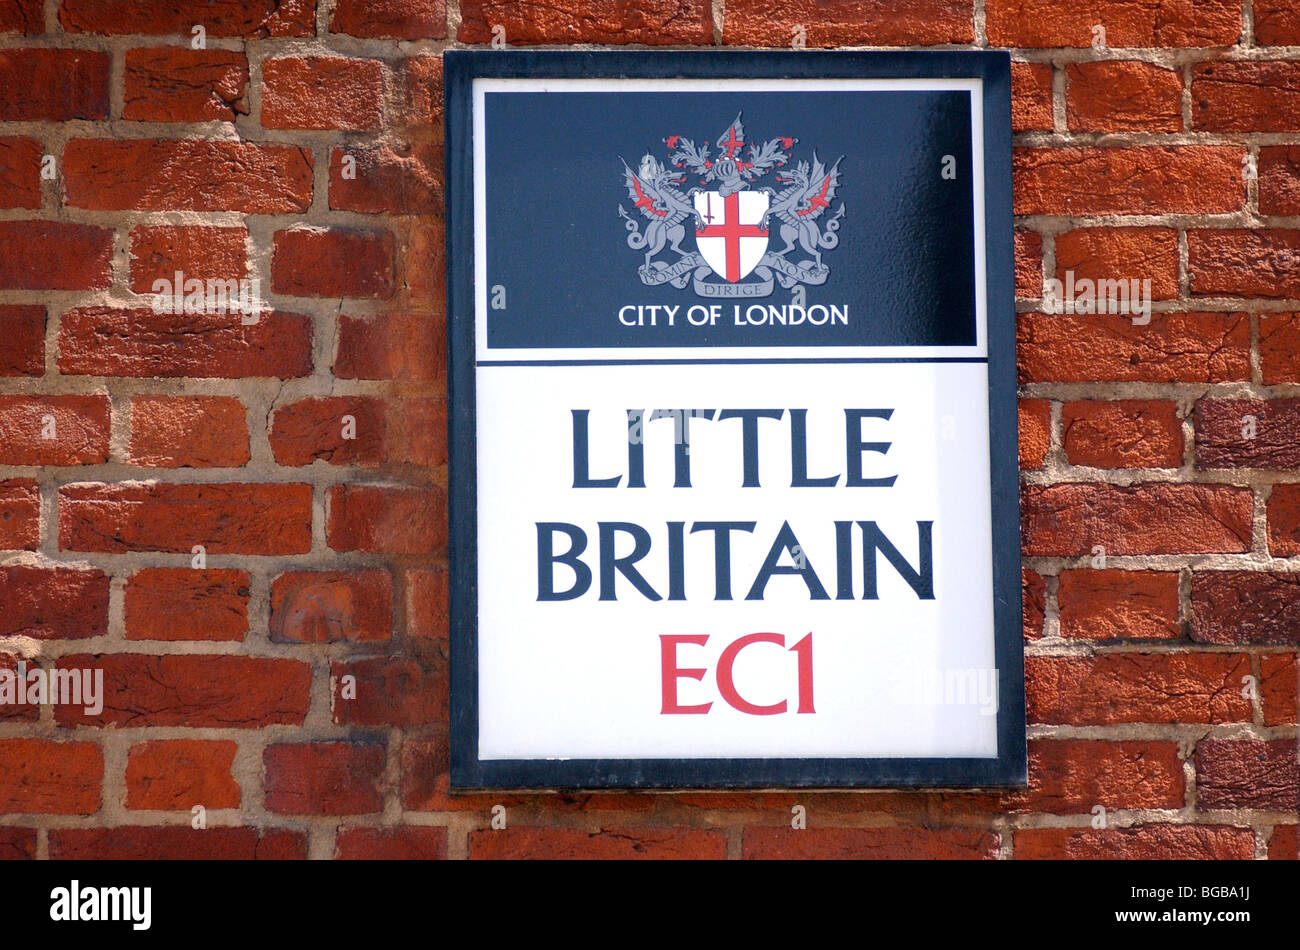 Image libre photo de Little Britain UK sign Landmark London intéressant Banque D'Images